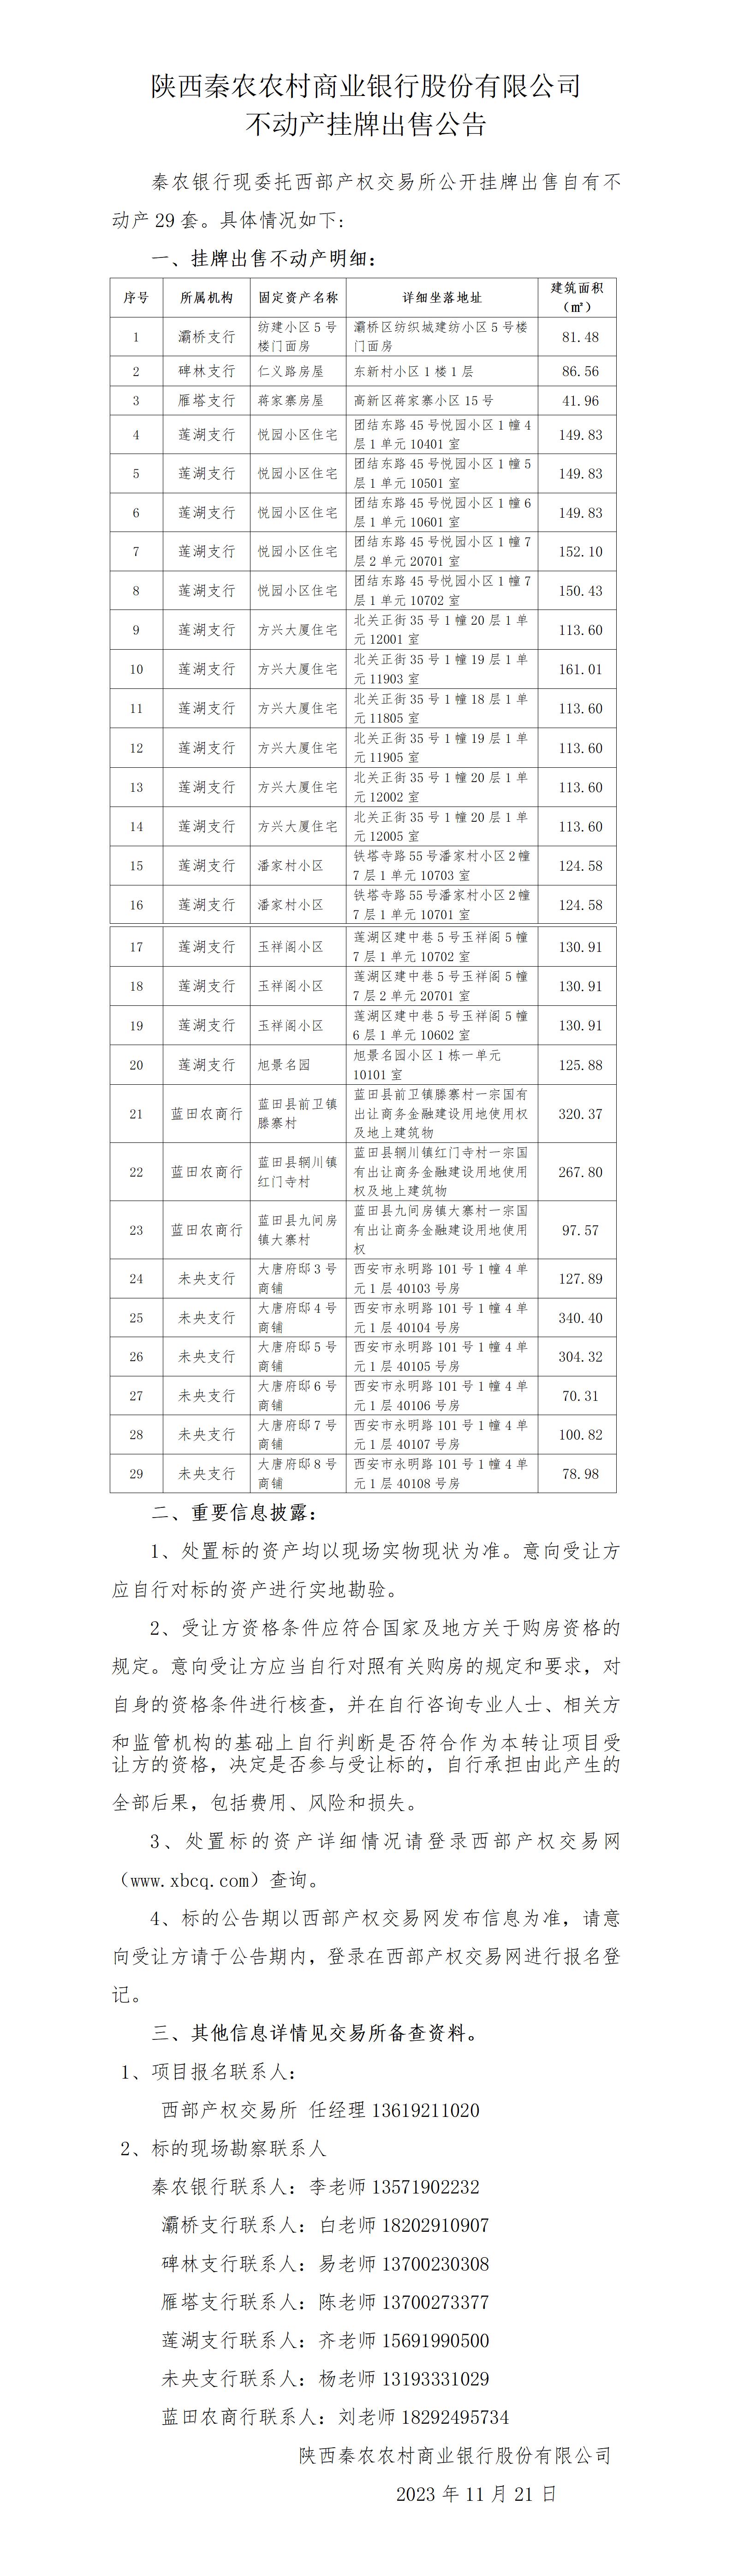 秦农银行资产处置公告(修改定稿)(1)_01(1).jpg